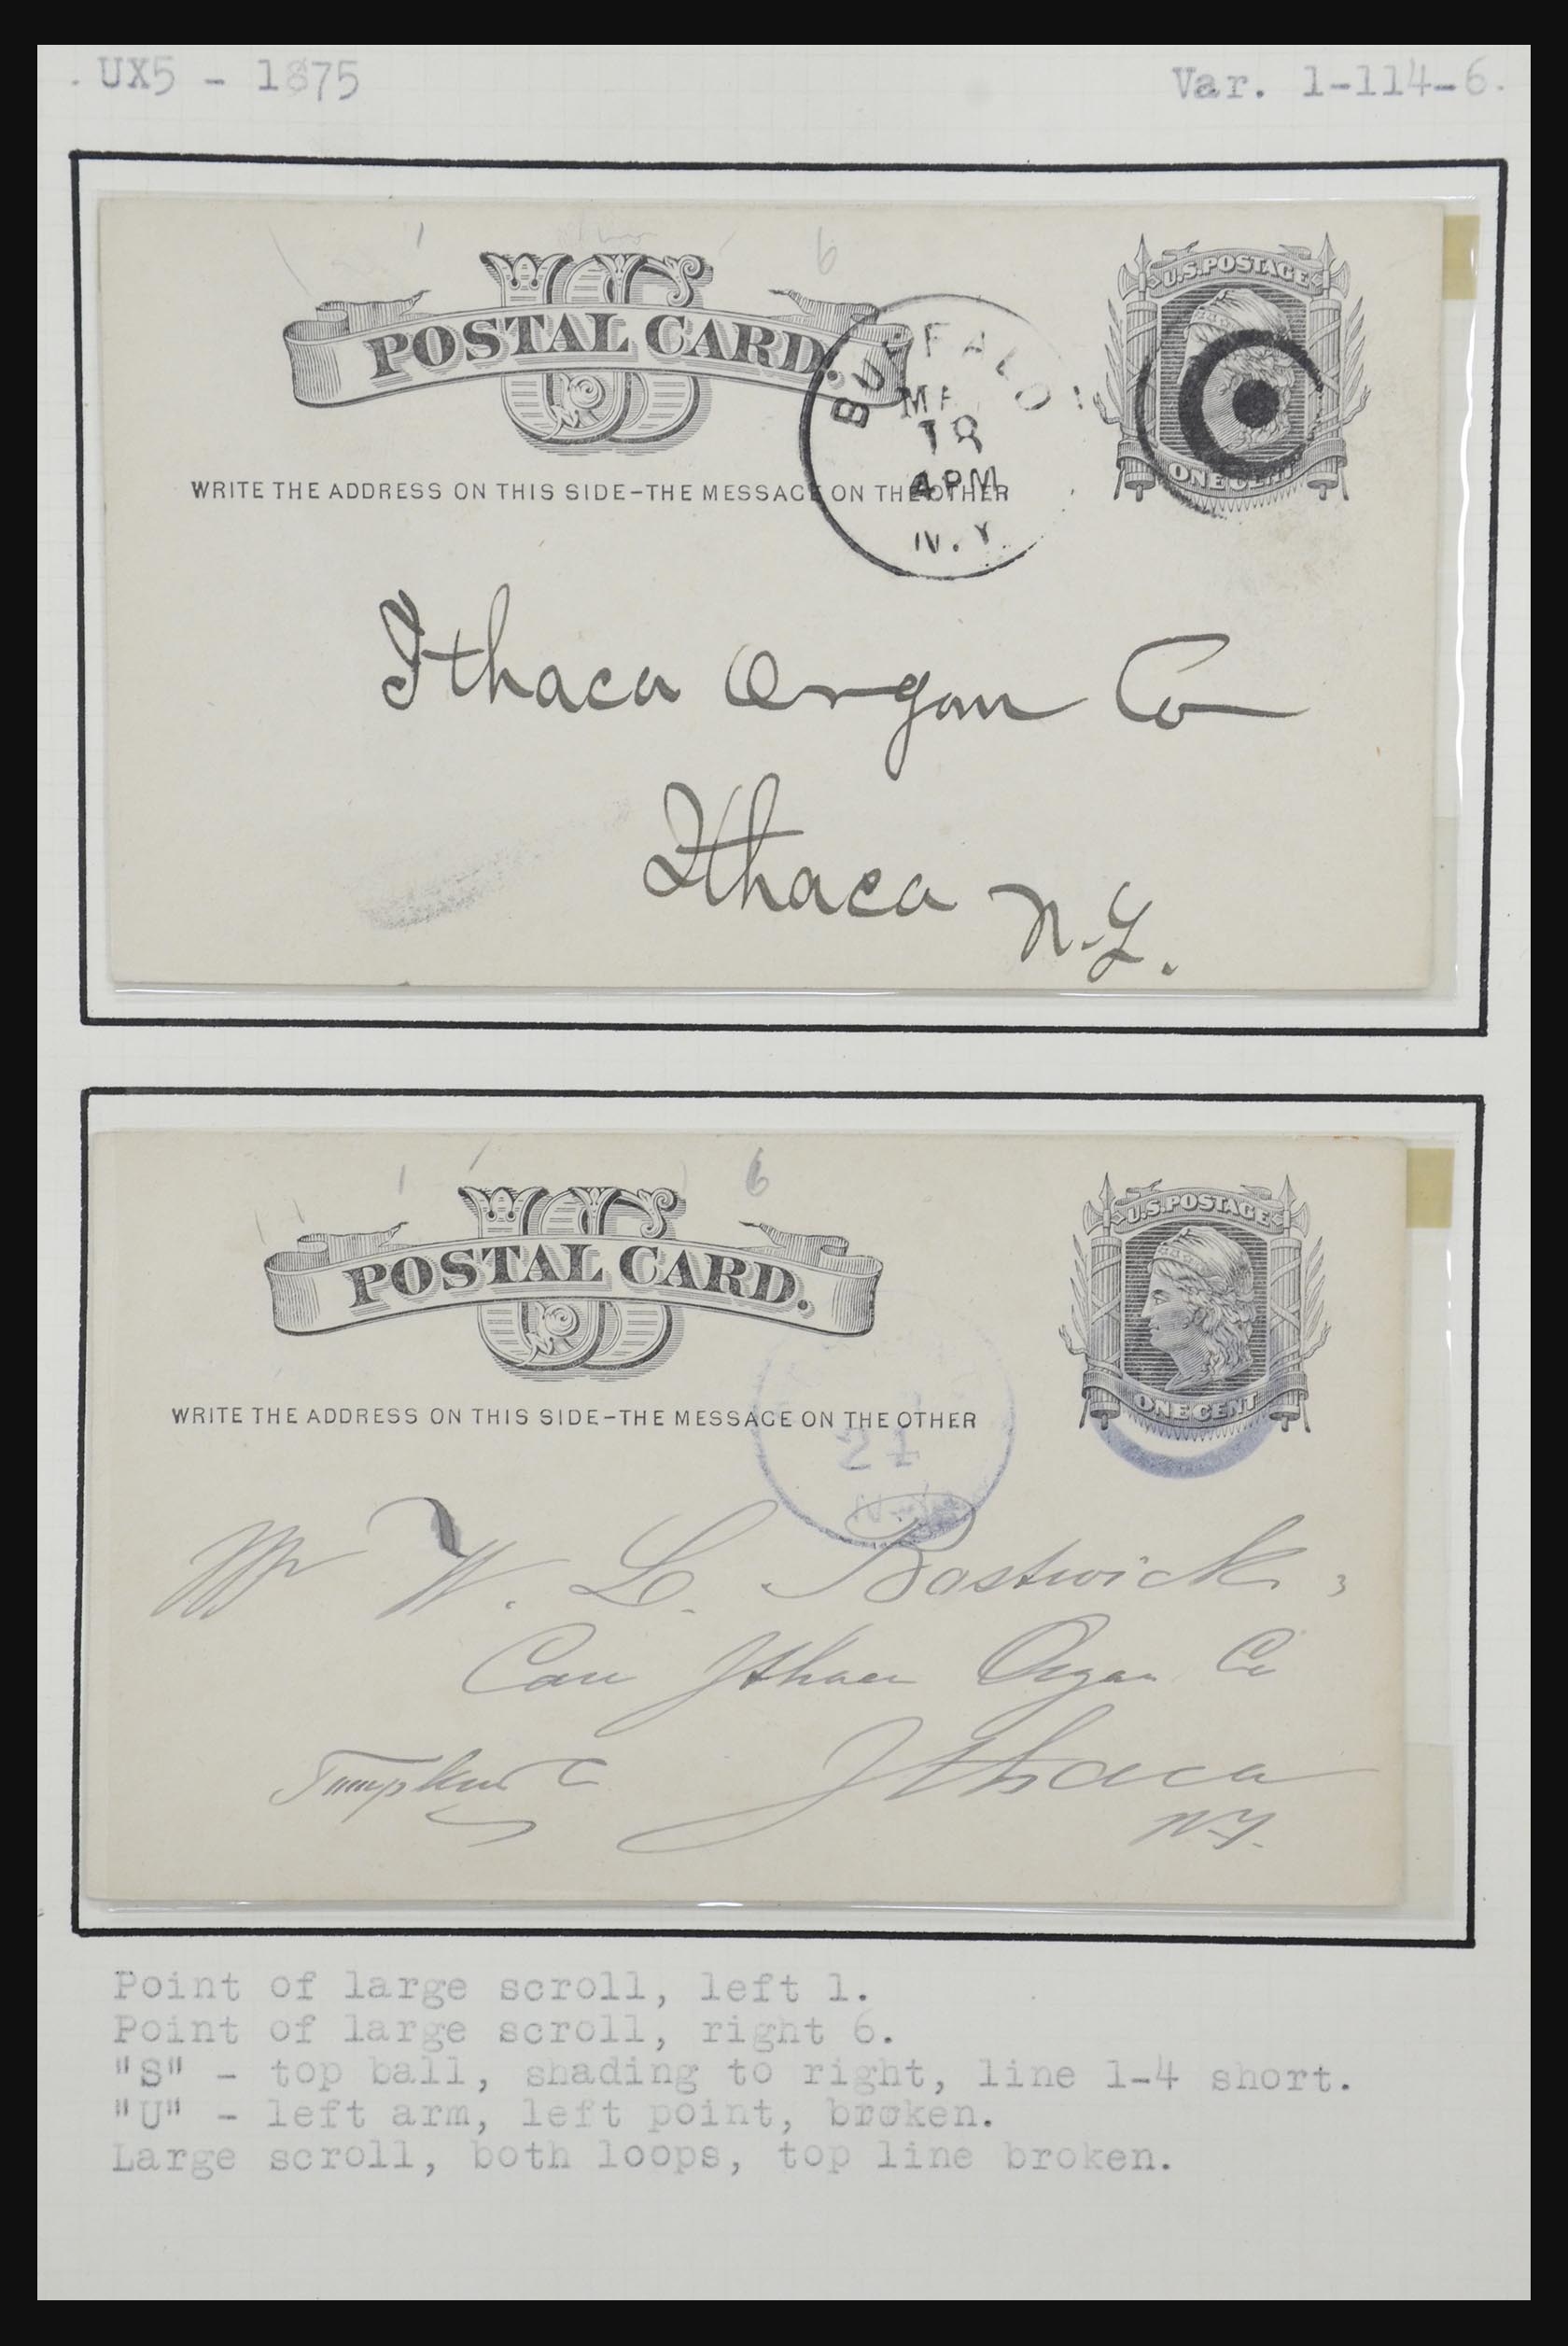 32209 079 - 32209 USA briefkaarten 1873-1950.